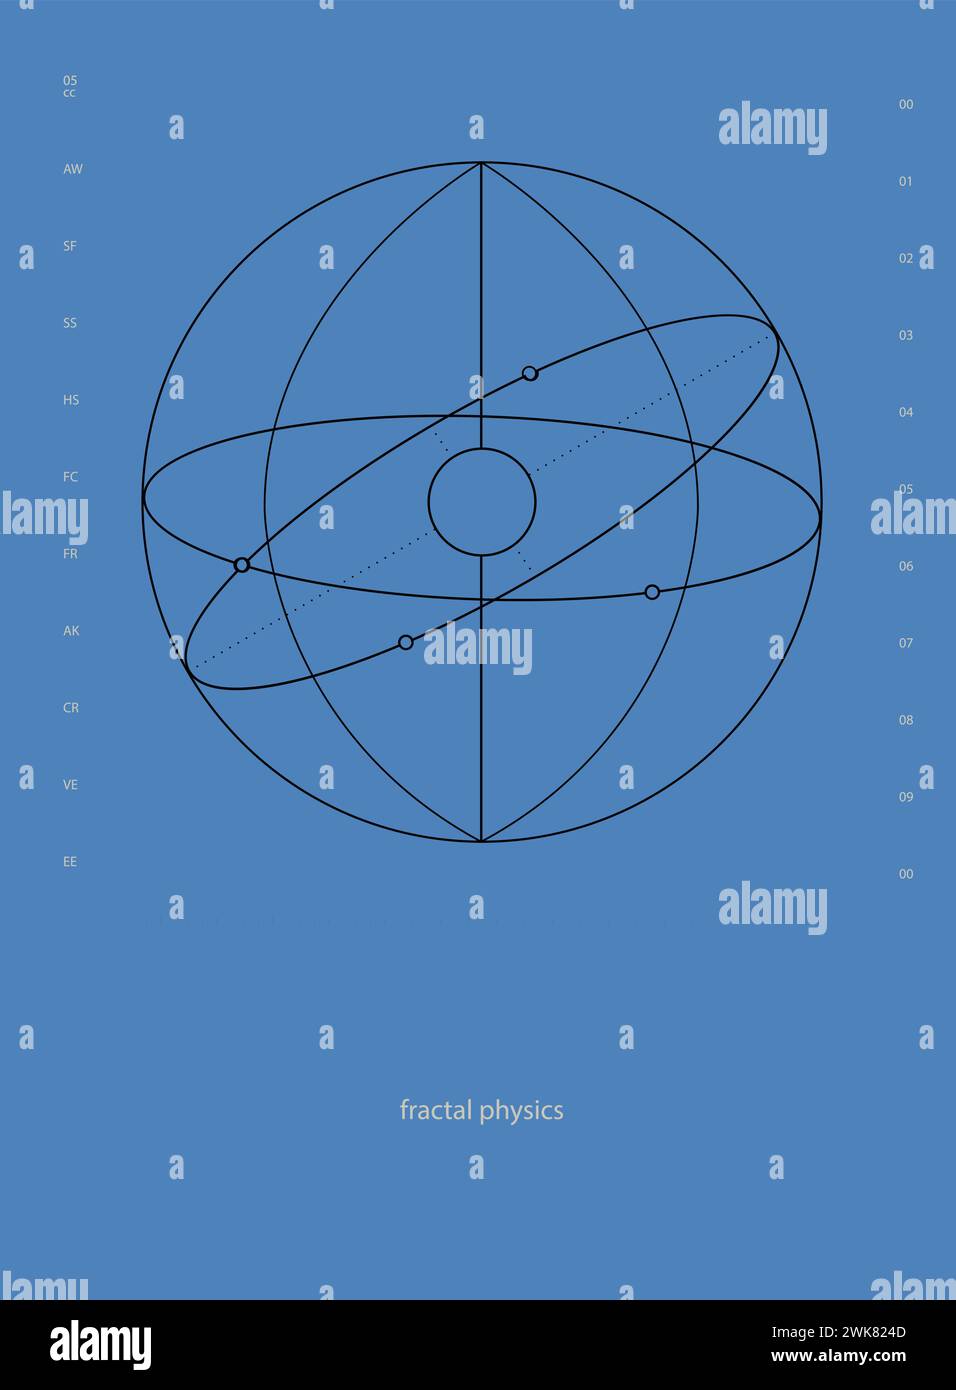 Fisica frattale. Forme geometriche astratte, illustrazione di una struttura simile a un atomo con percorsi orbitanti su sfondo blu. Estetica moderna, minimalista Illustrazione Vettoriale